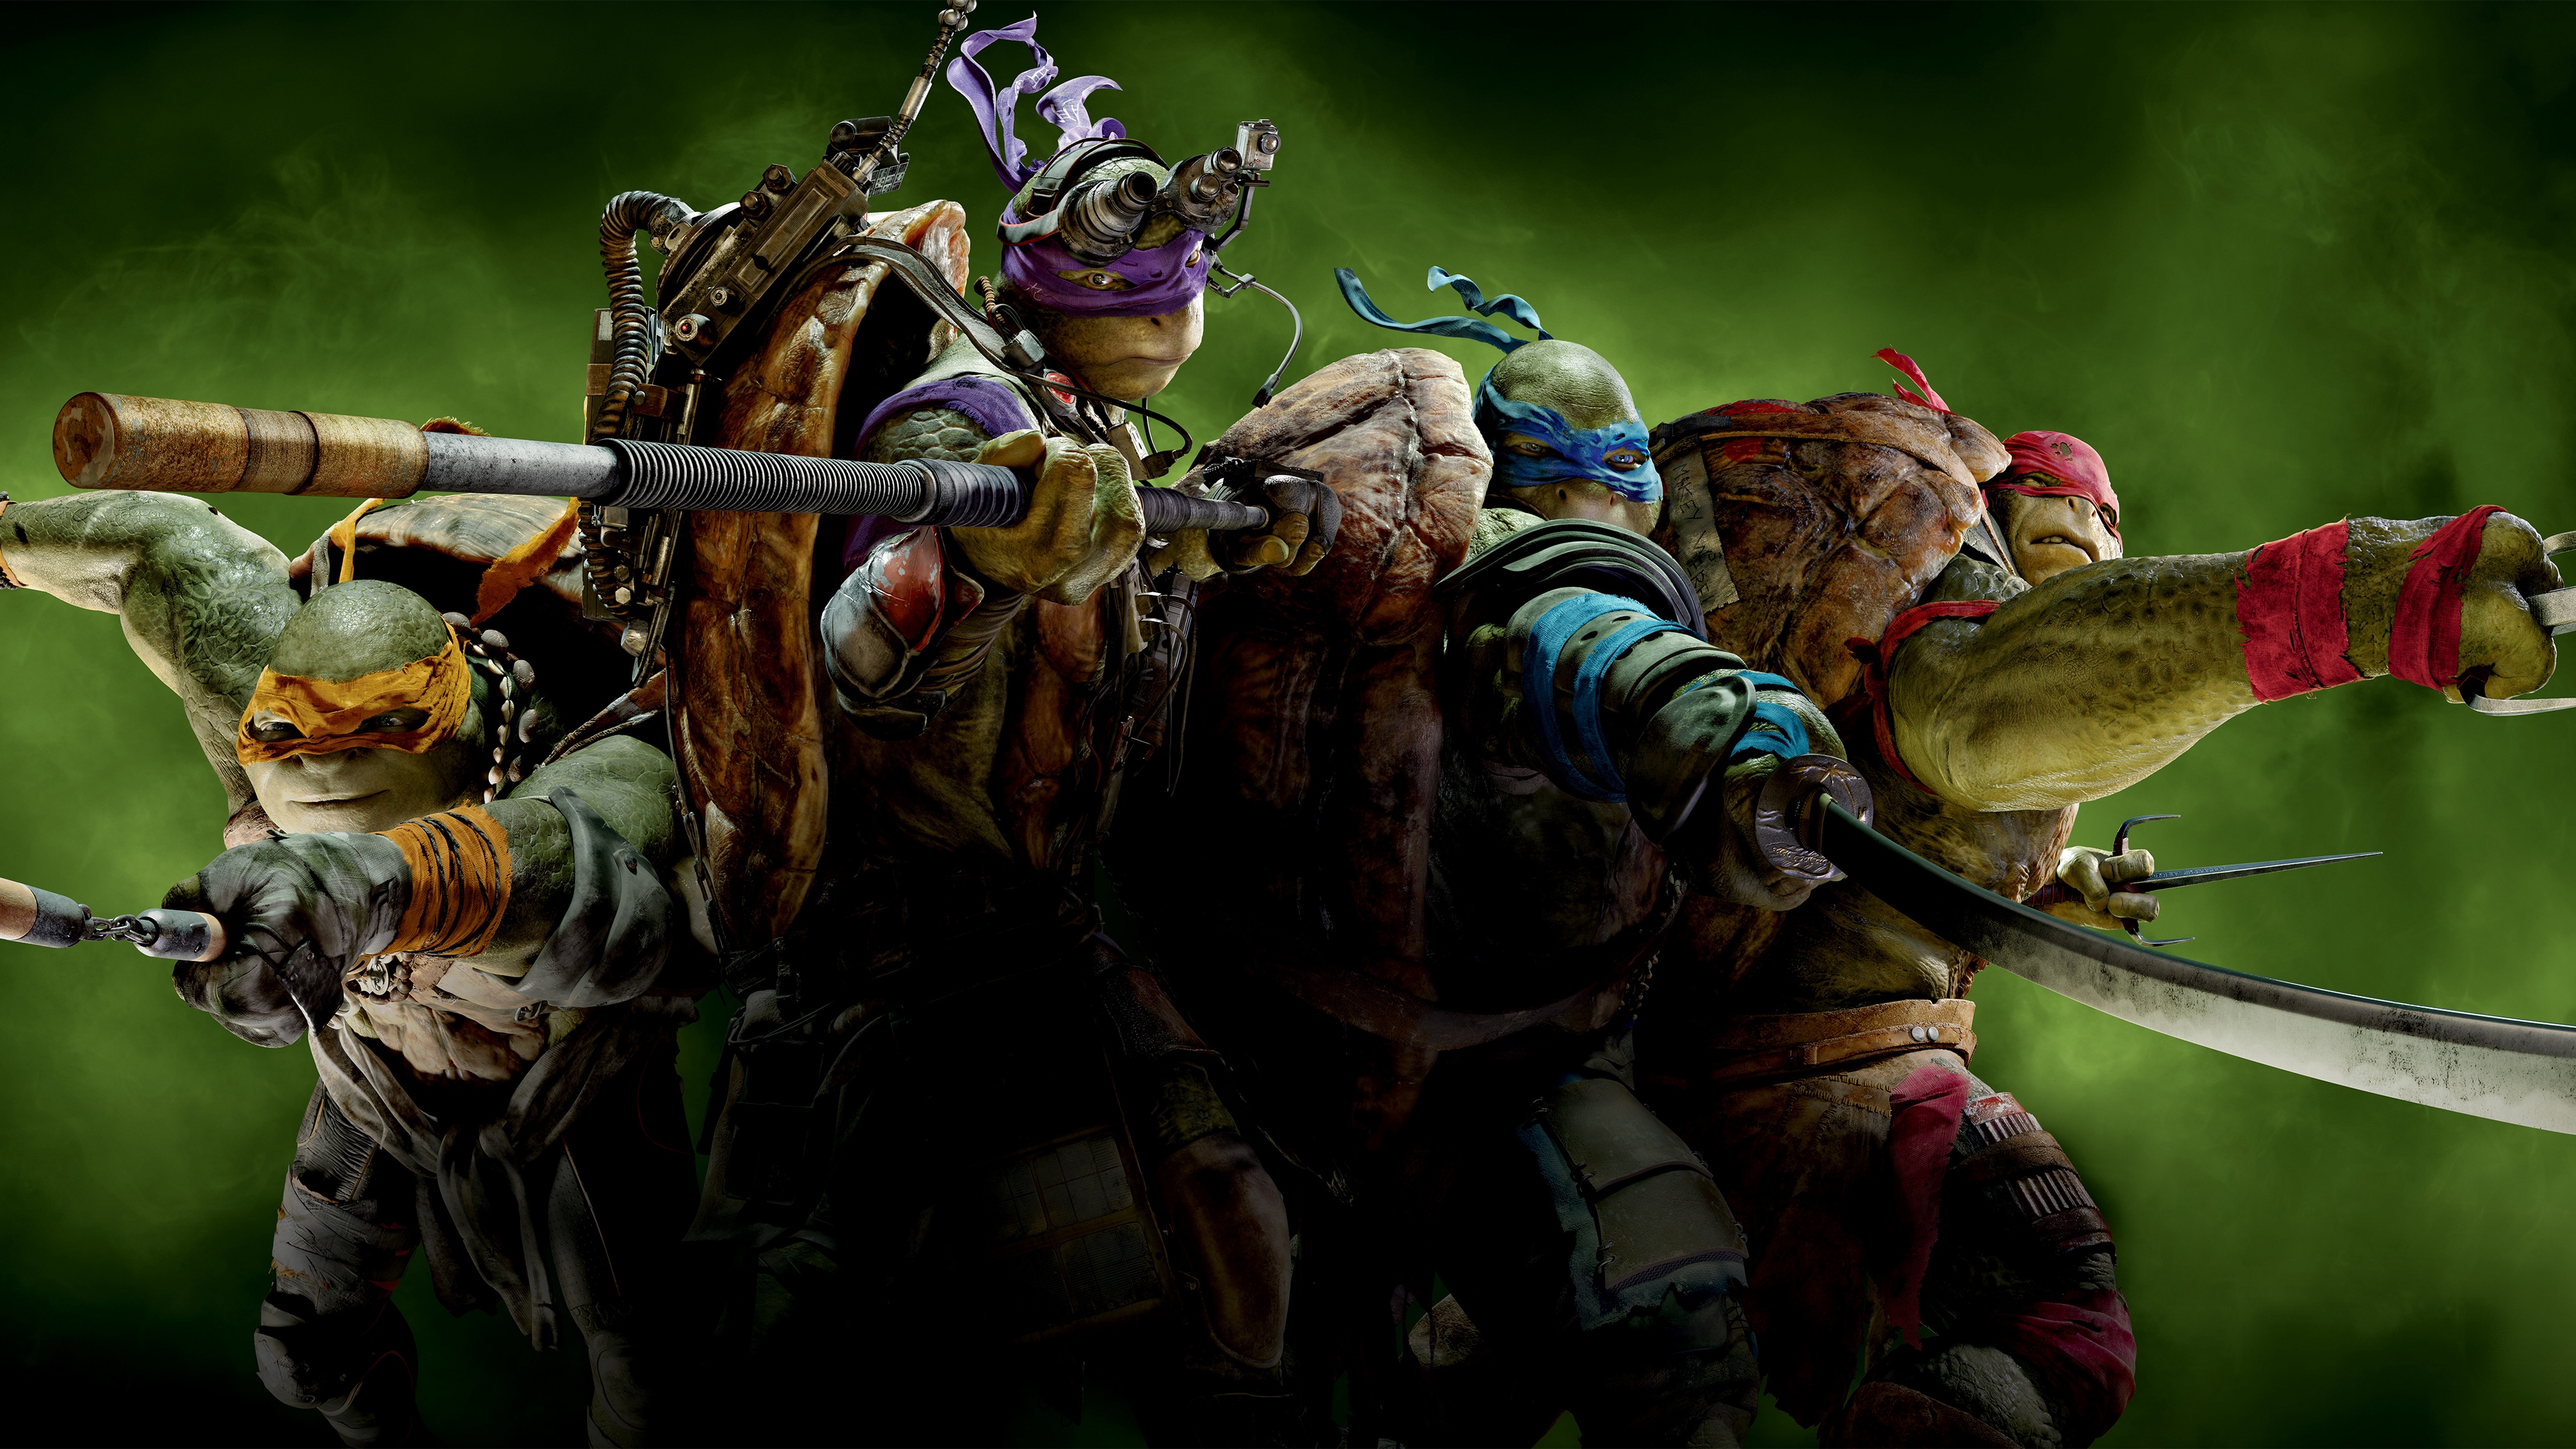 Wallpaper Teenage Mutant Ninja Turtles, Raphael, Michelangelo, - Teenage Mutant Ninja Turtles 4k - HD Wallpaper 